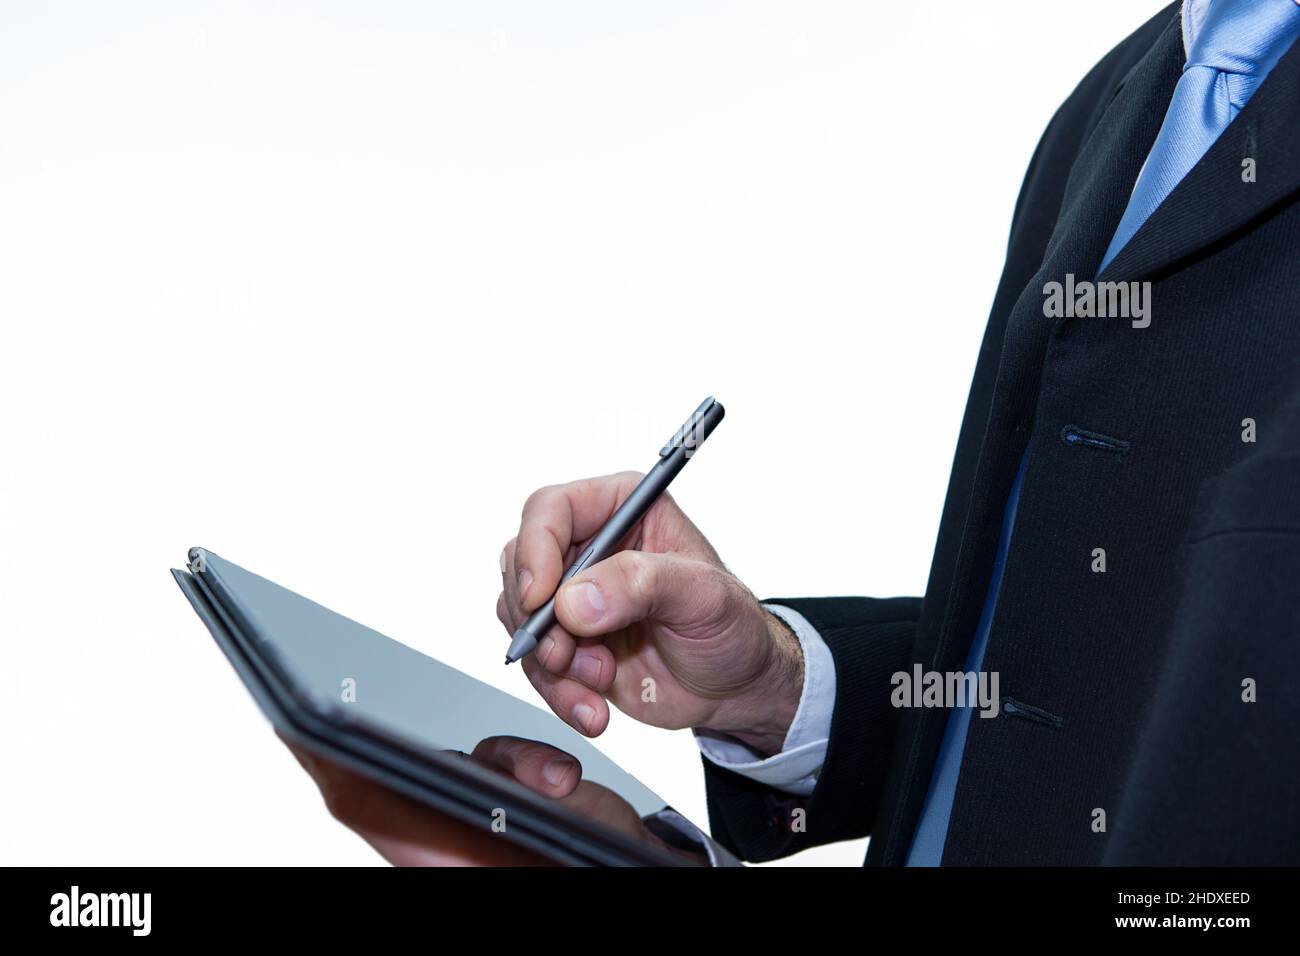 Homme d'affaires méconnu avec une tablette à l'aide d'un stylo numérique, fond blanc Banque D'Images